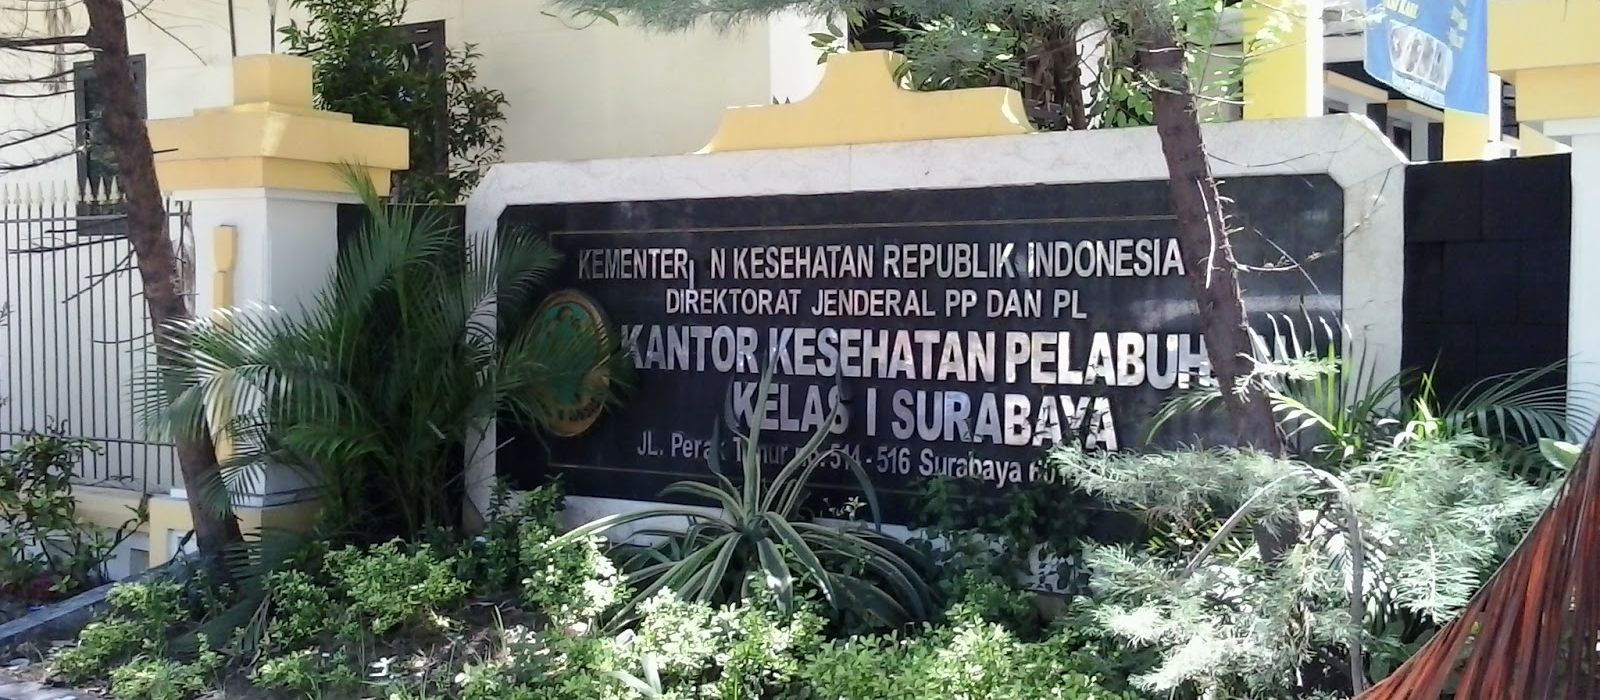 Kantor KKP Tanjung Perak Surabaya